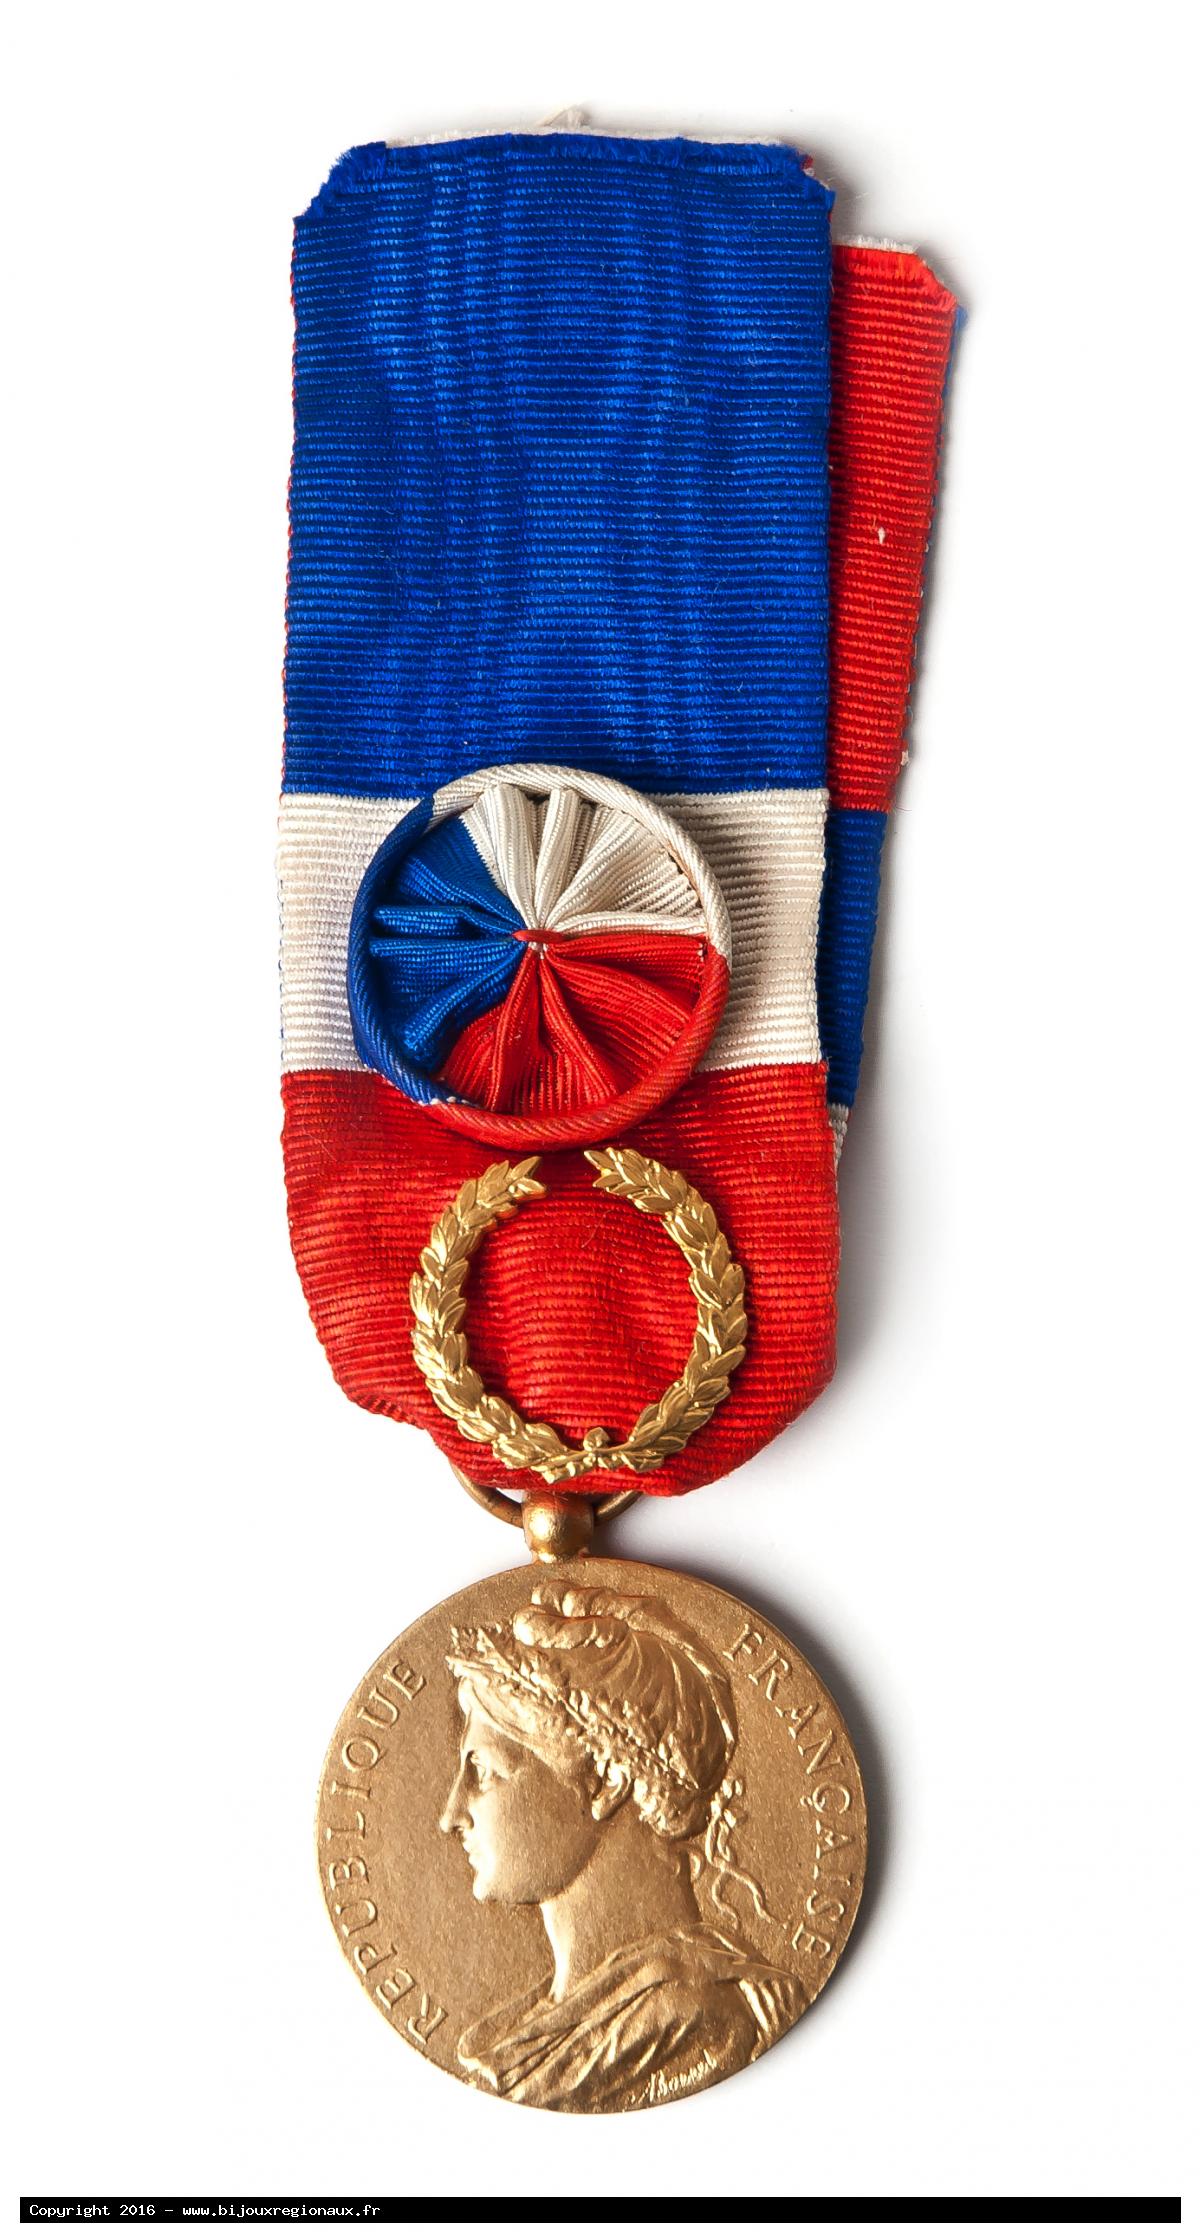 Médaille d'or de la retraite grand prix d'excellence - collier bleu, blanc,  rouge. - Cadeaux humoristiques anniversaire - Creavea